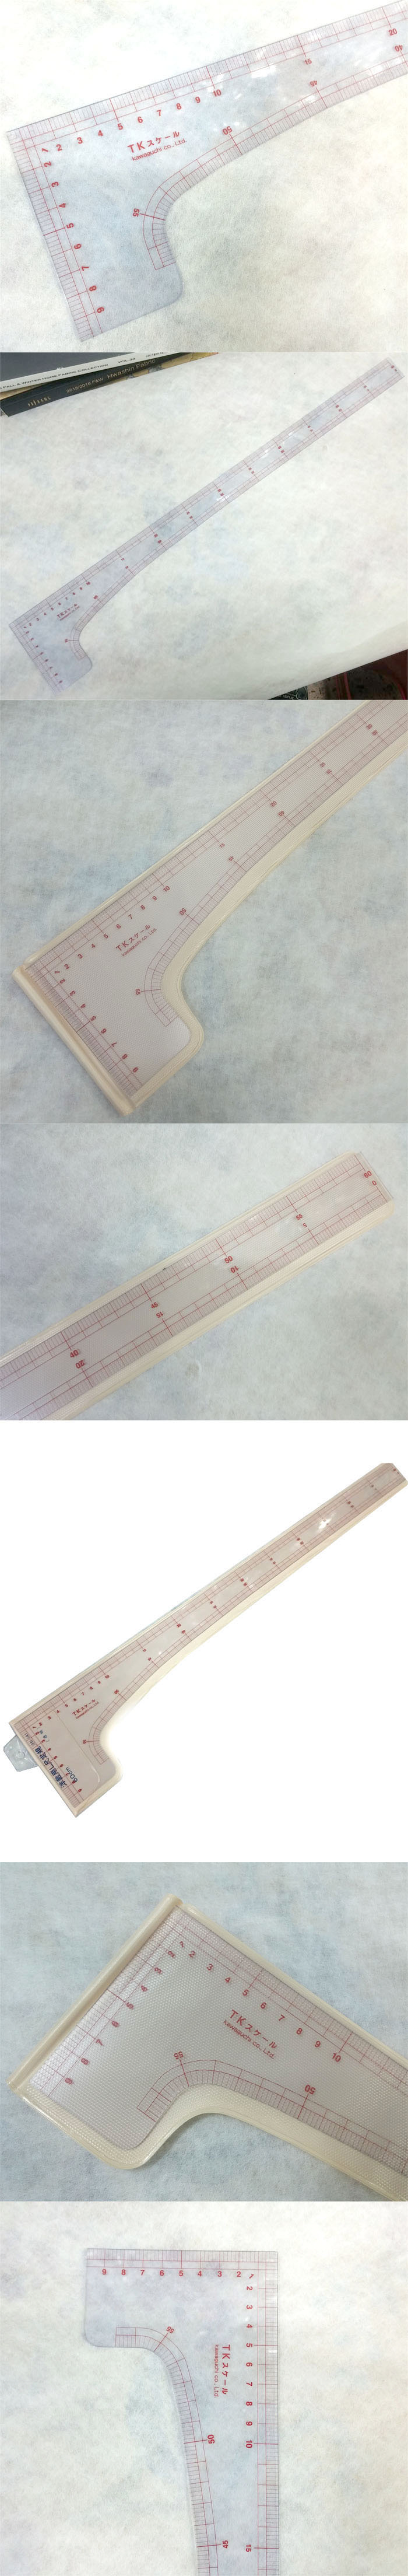 가와구찌 직각 곡자겸용자-60cm(05-141)